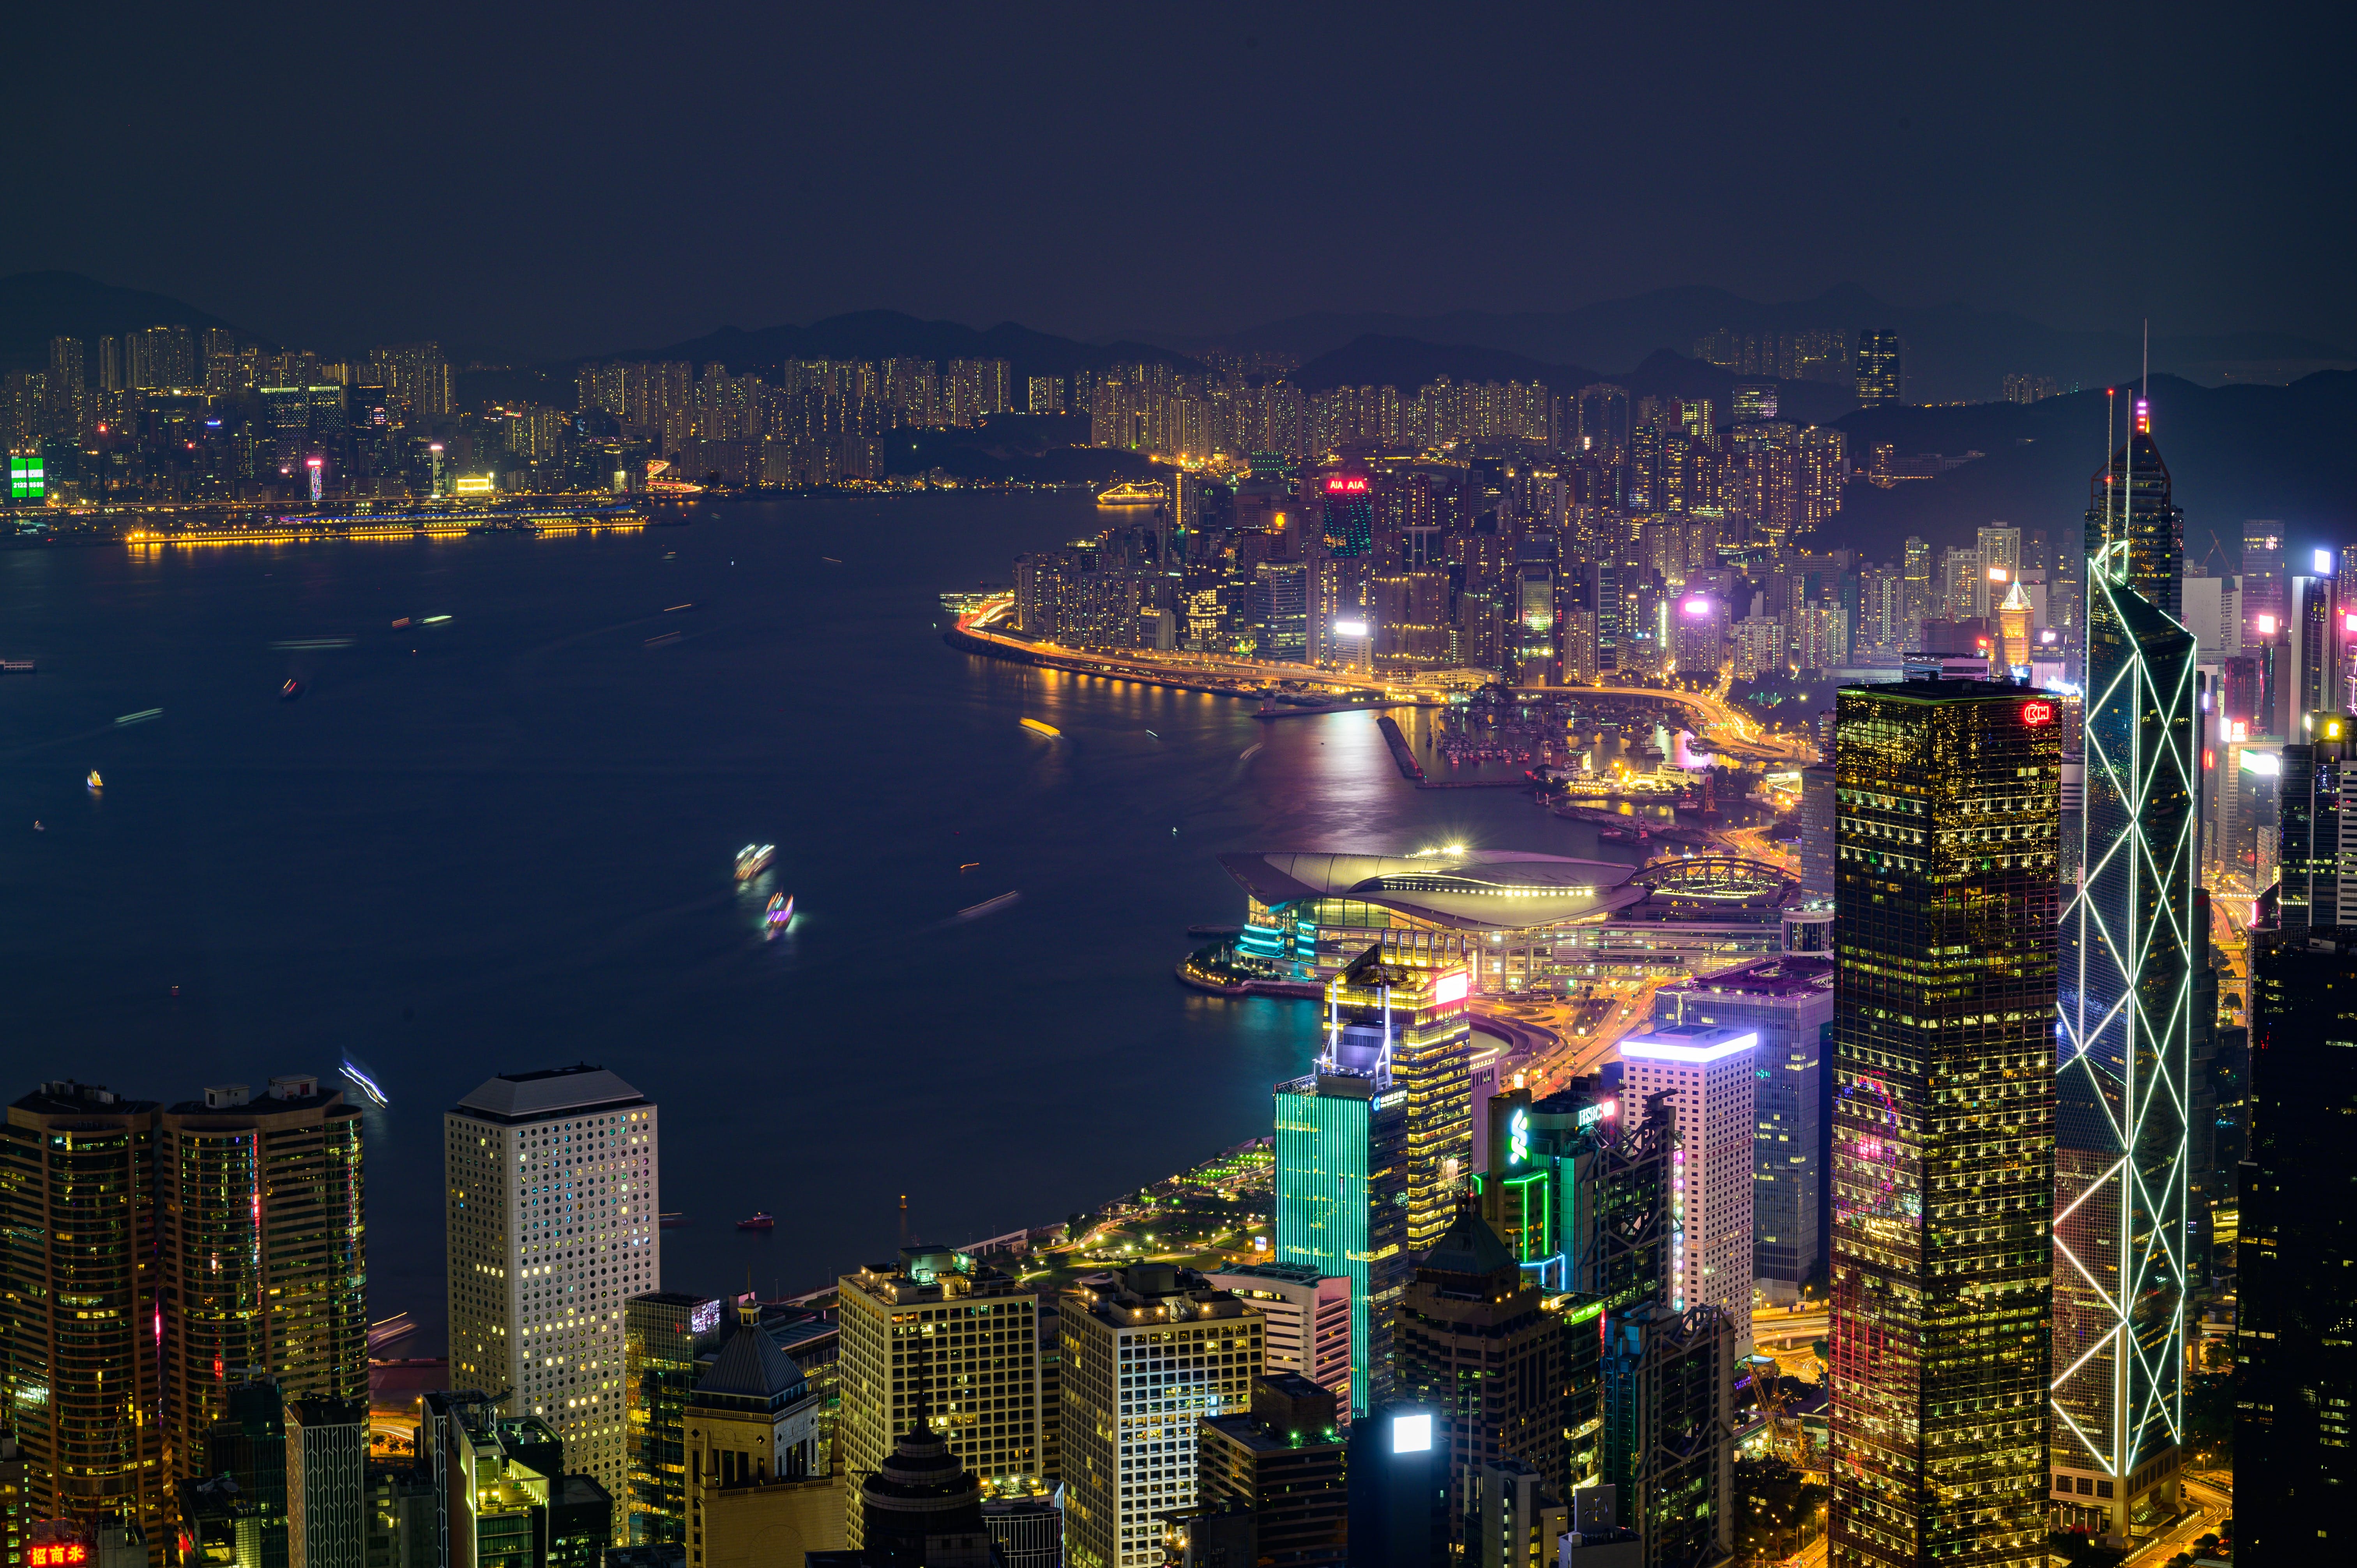 Hong Kong doubles down on next generation fintech